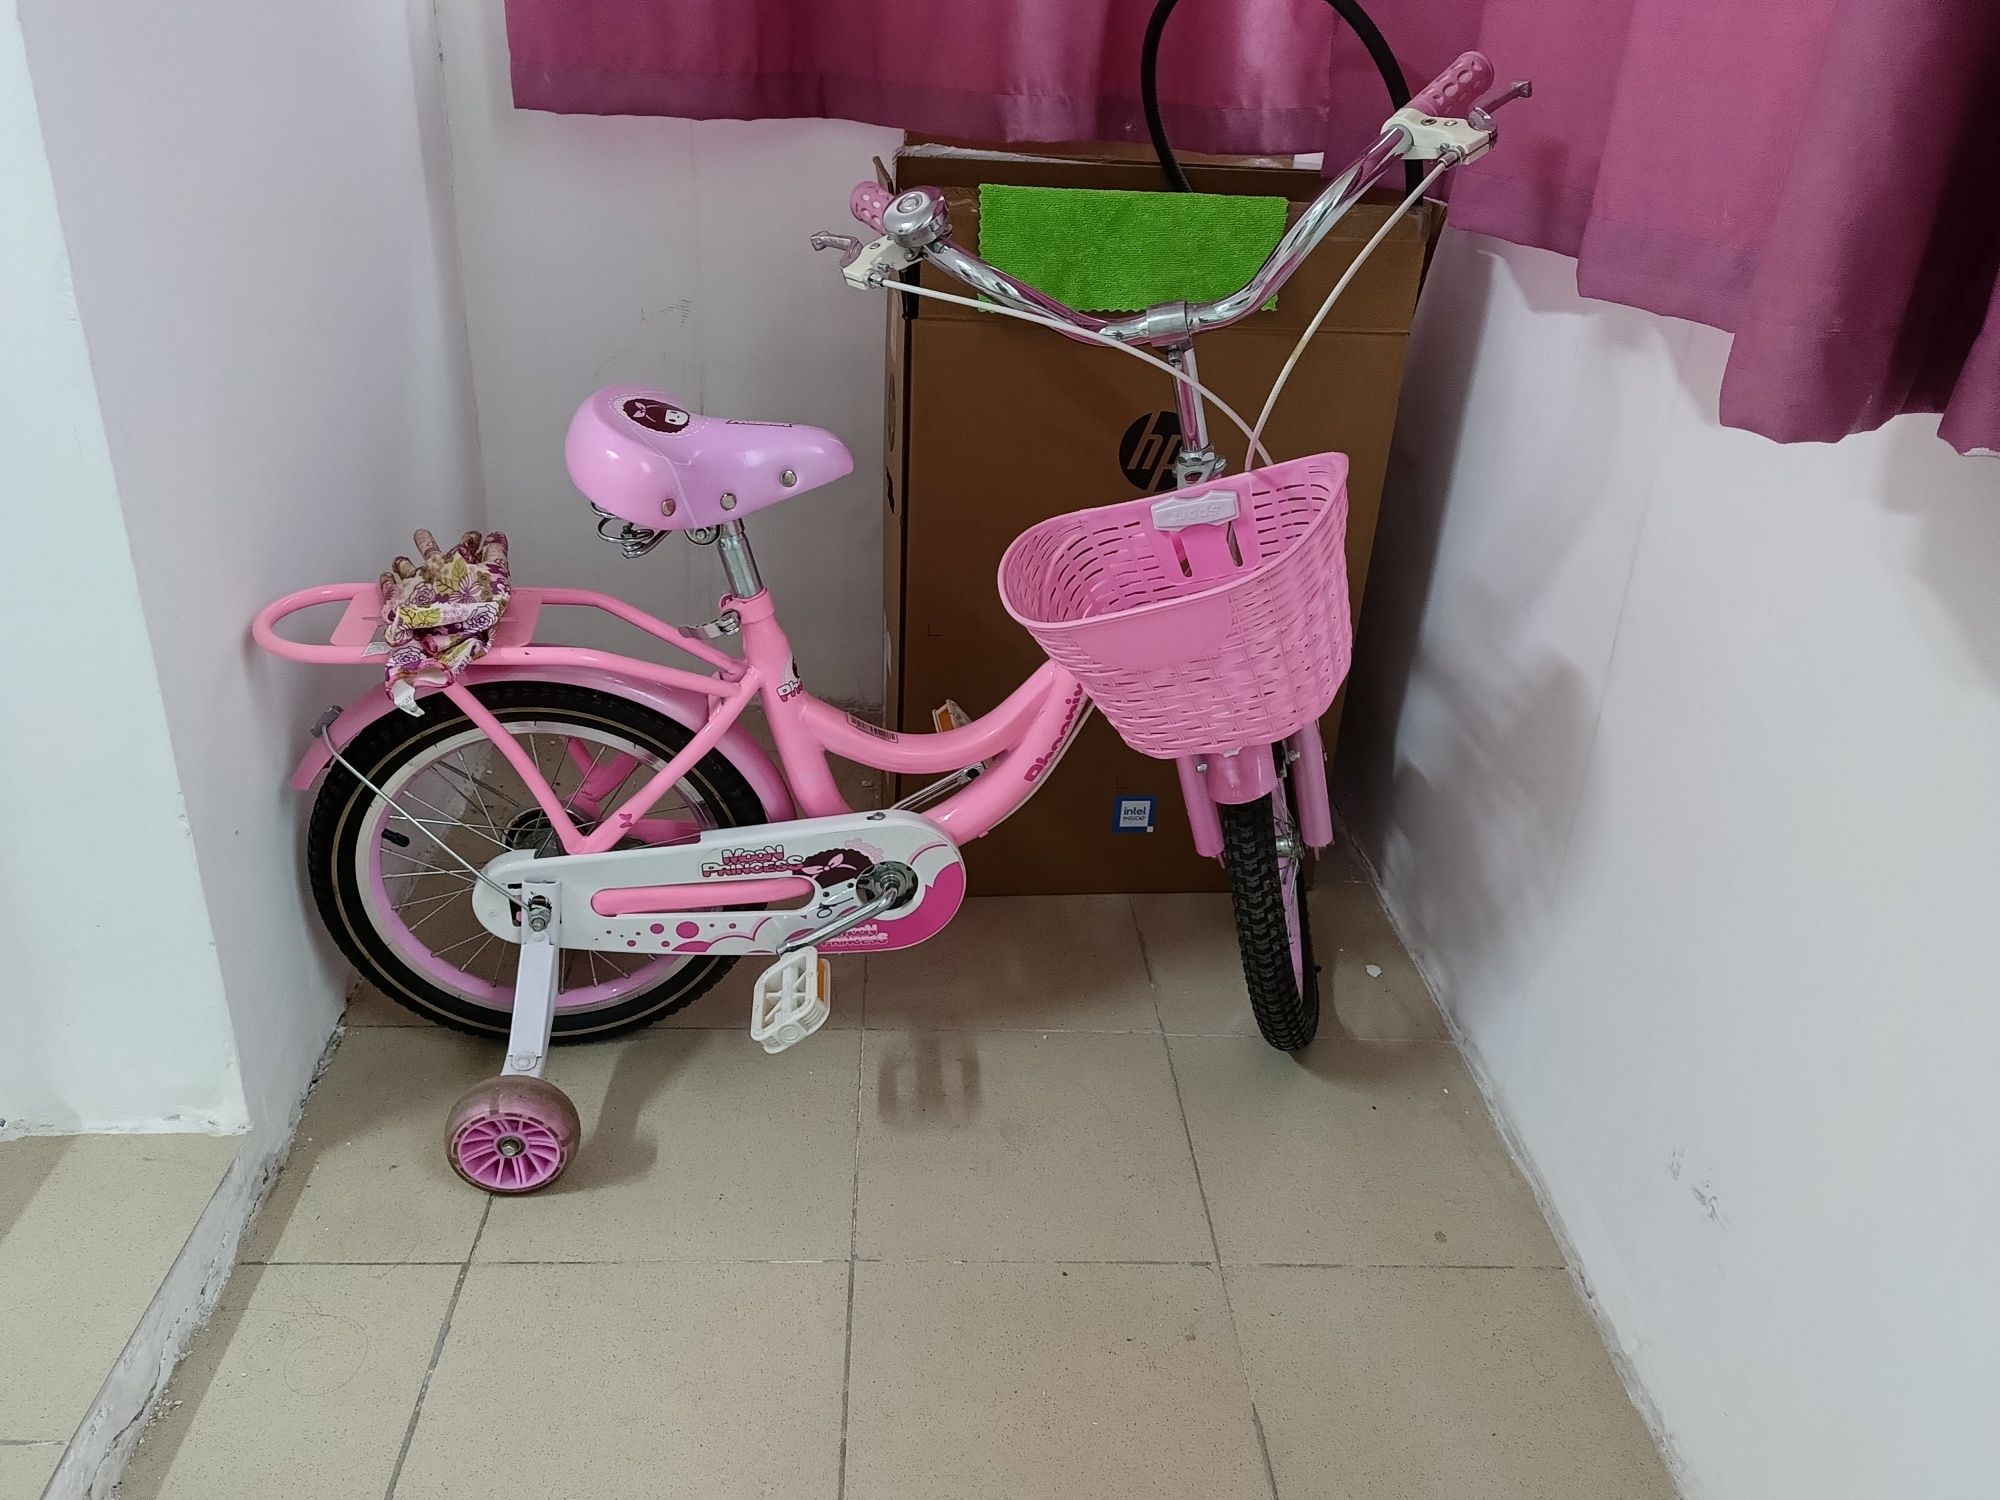 Детский велосипед Phoenix QR16A1603JL (Pink)